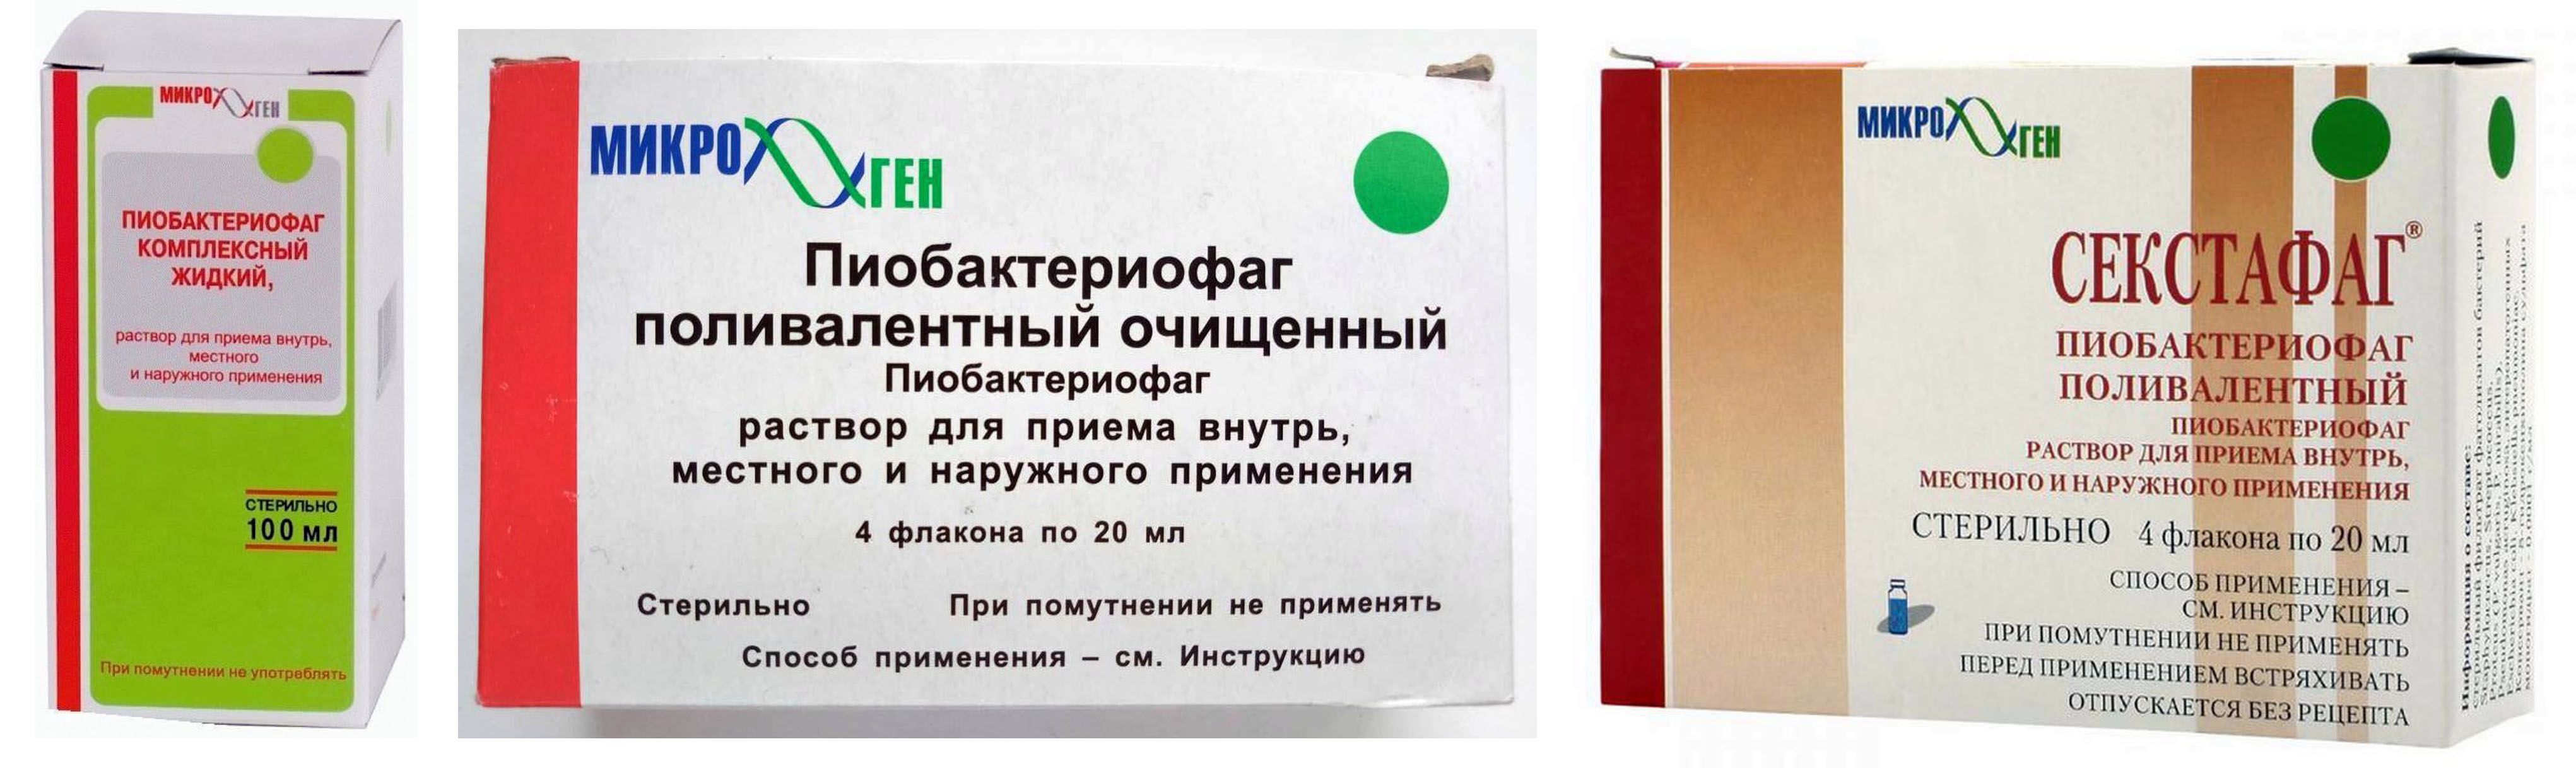 Пиобактериофаг комплексный, цена в Санкт-Петербурге от 850 руб.,  .